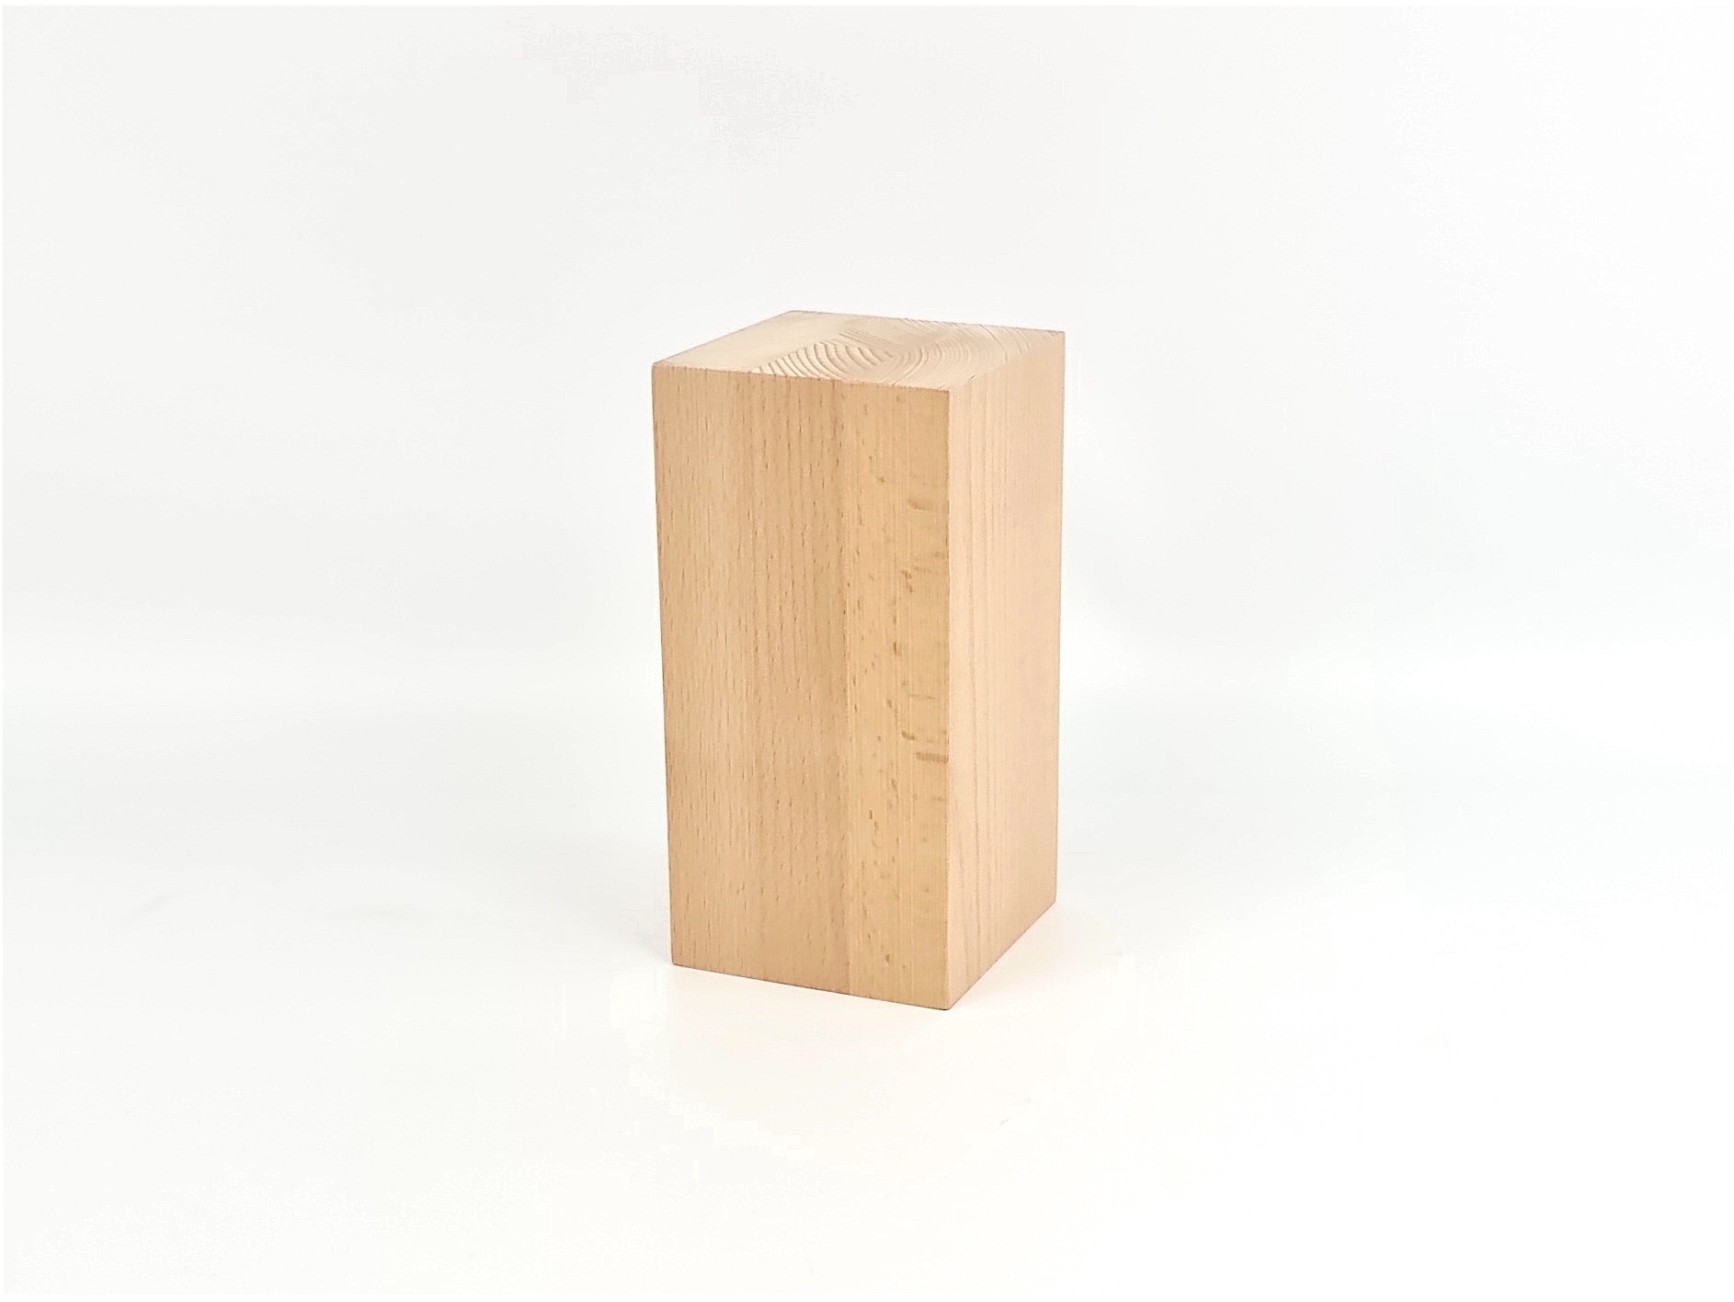 Tacos cuadrados de madera dura de 1/4 pulgadas x 36 pulgadas, bolsa de 10